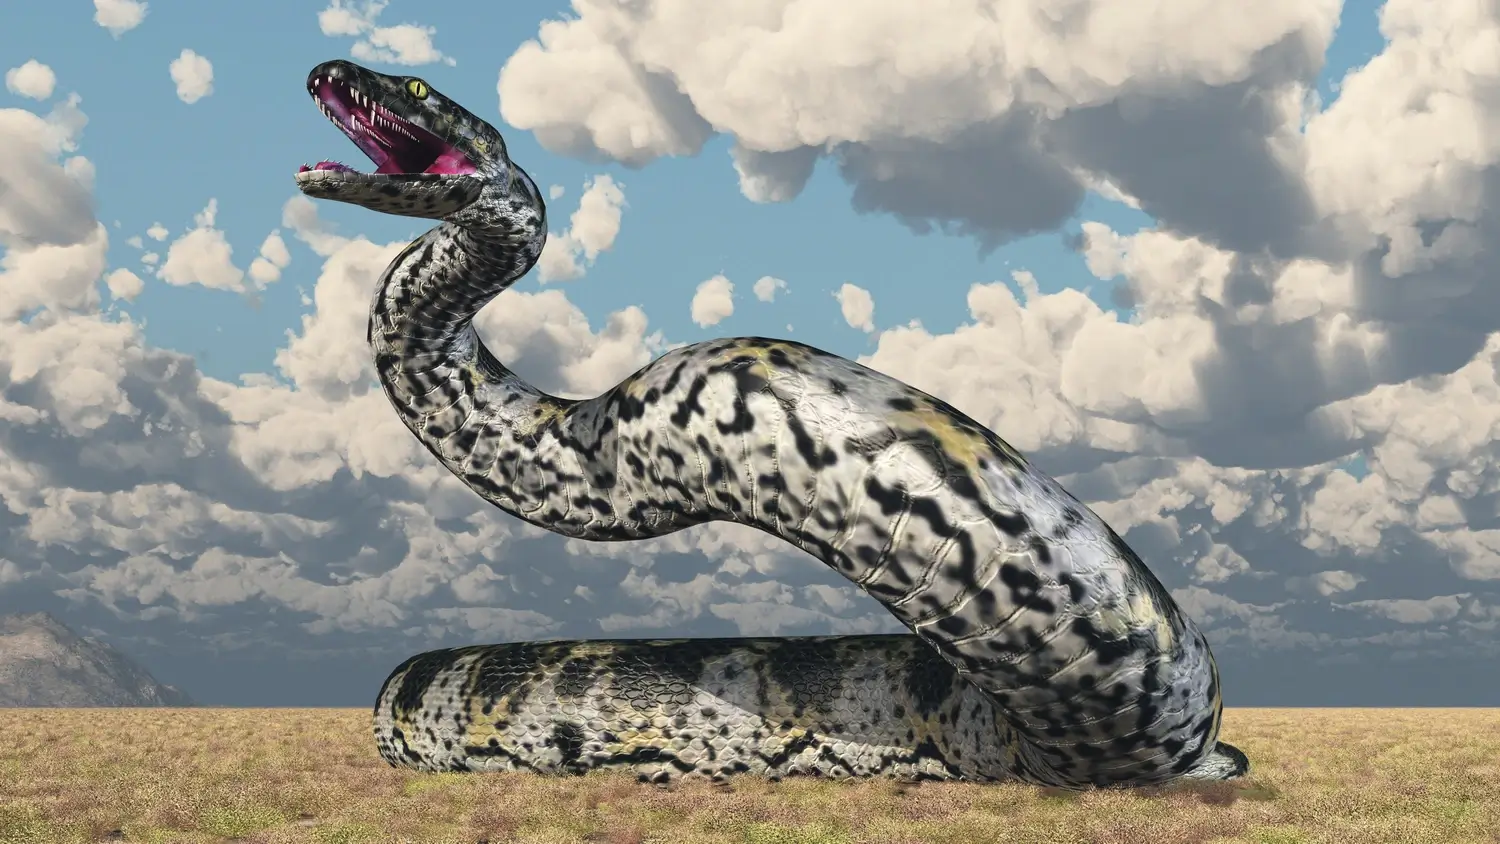 Художественный портрет титанобоа, самой большой змеи, когда-либо существовавшей на Земле